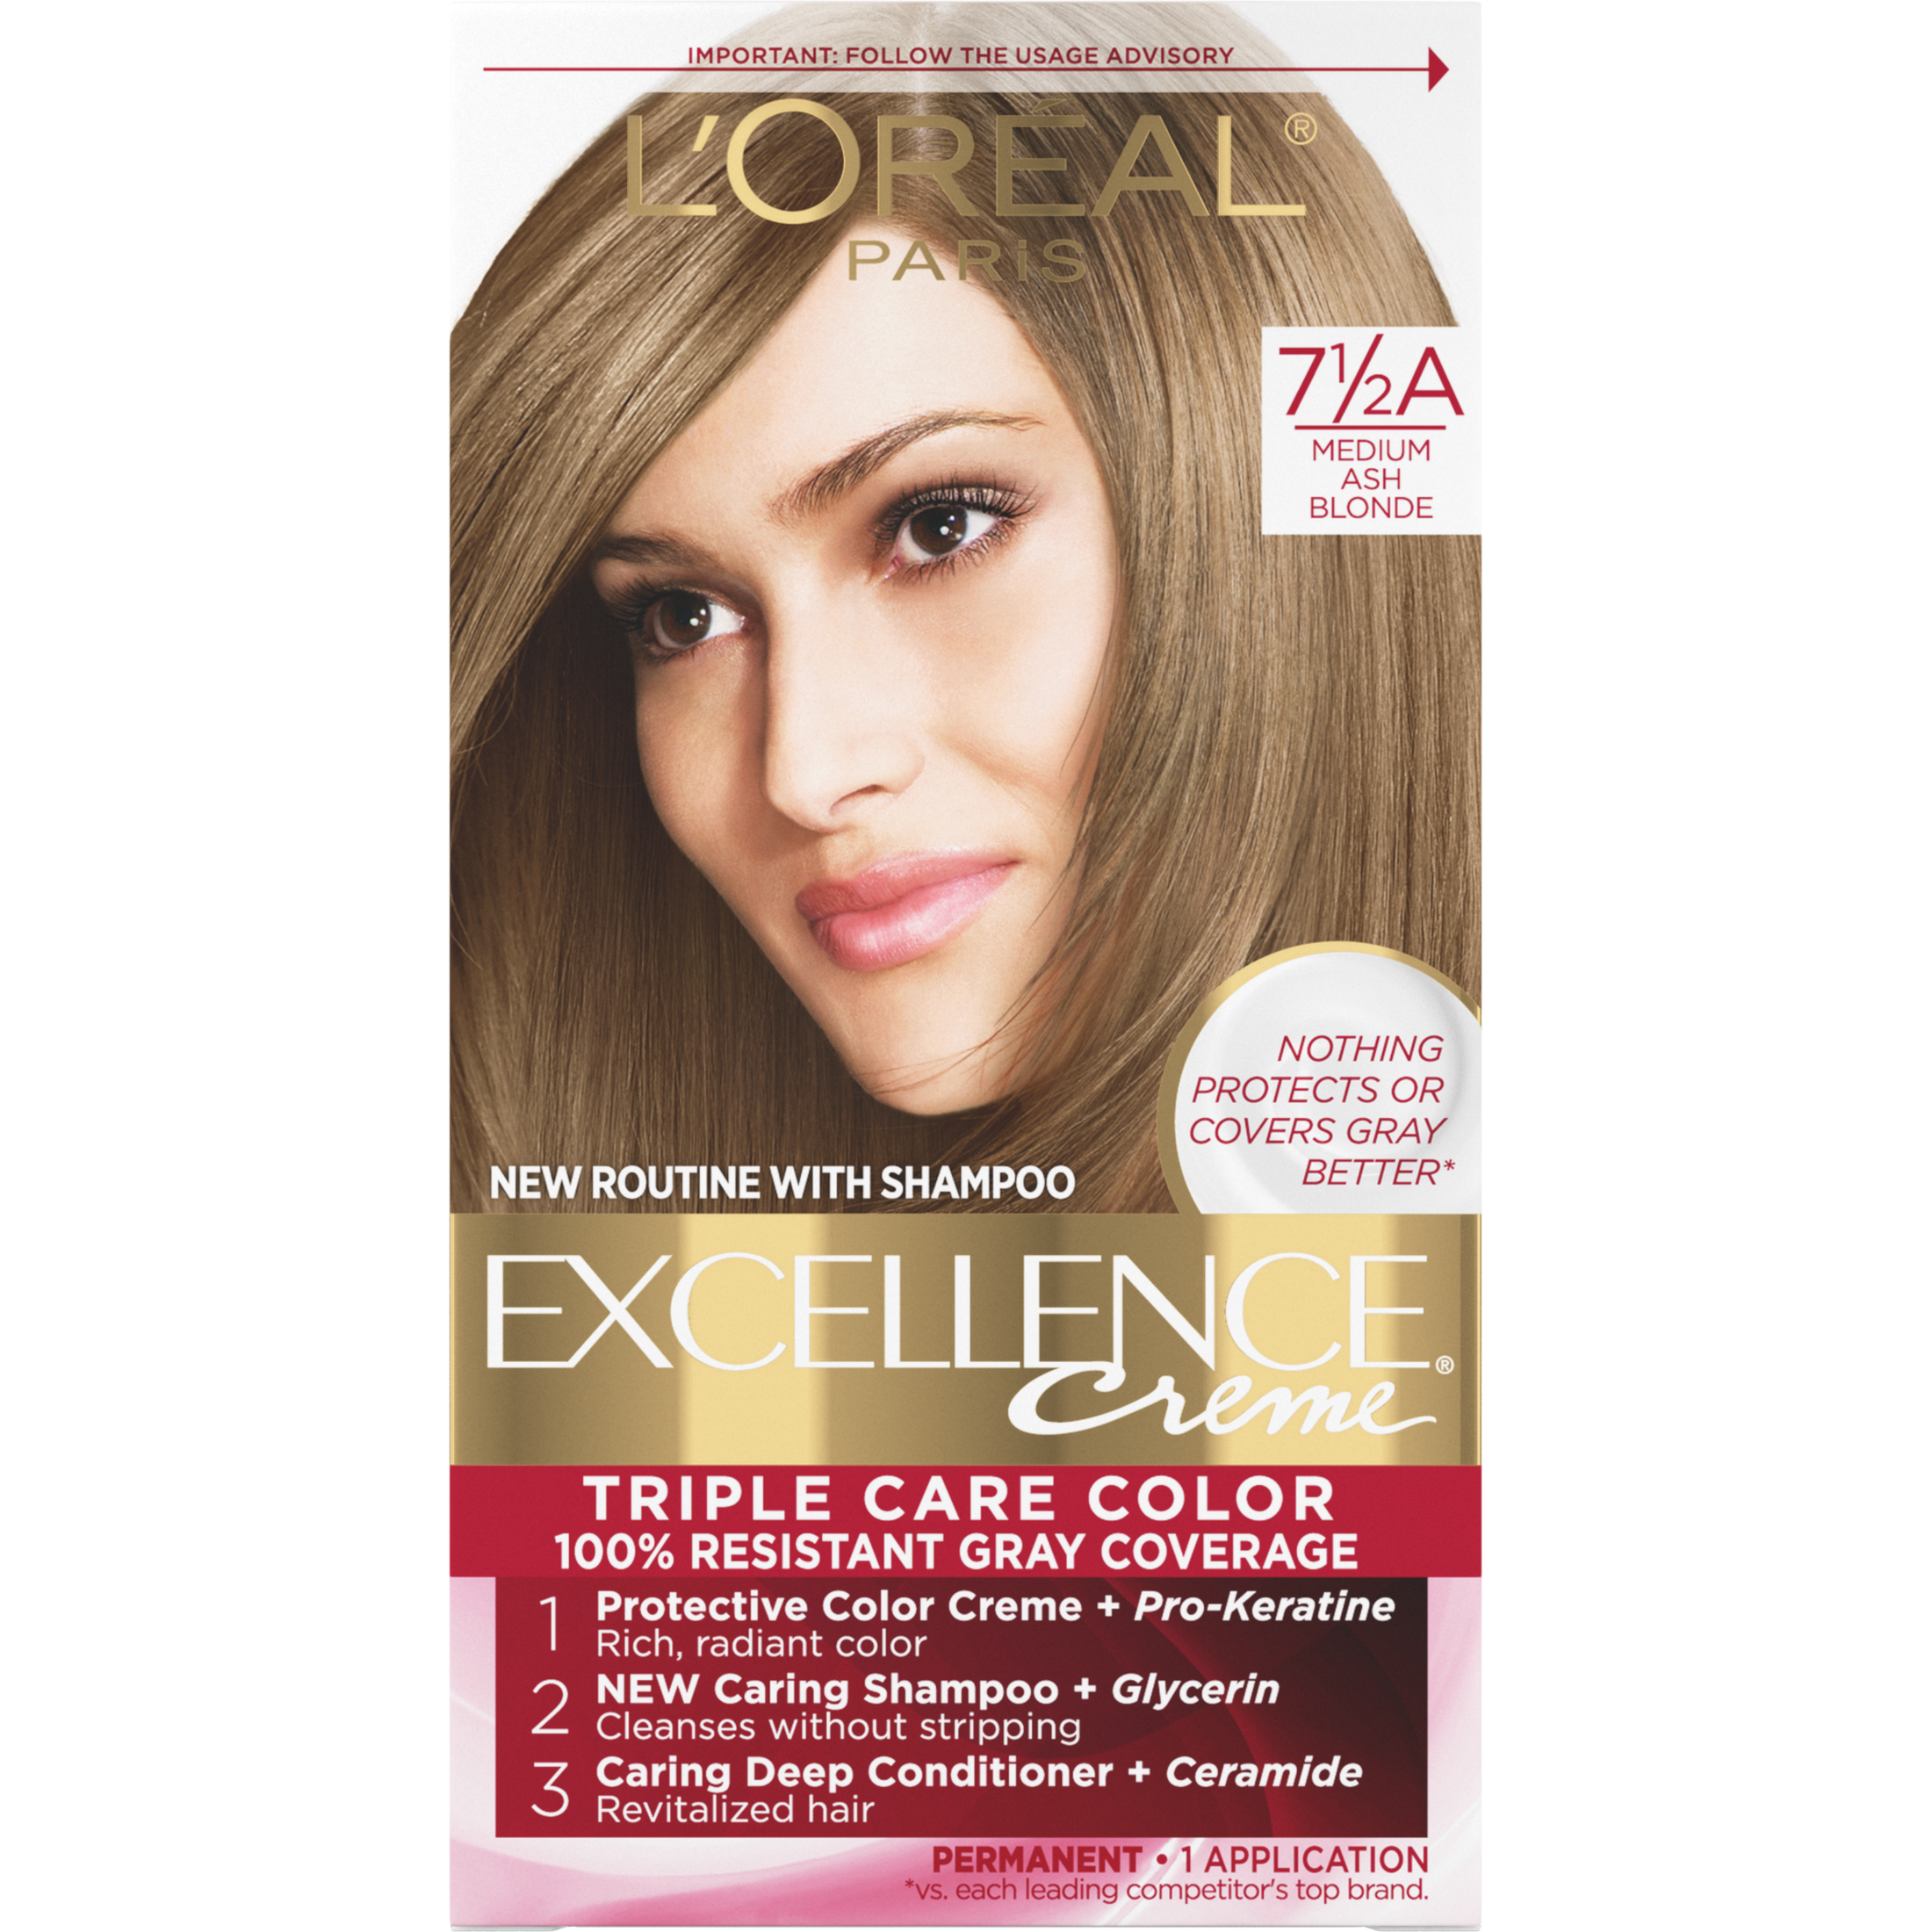 L'Oreal Paris Excellence Creme Permanent Hair Color, 7.5A Medium Ash Blonde - image 1 of 8